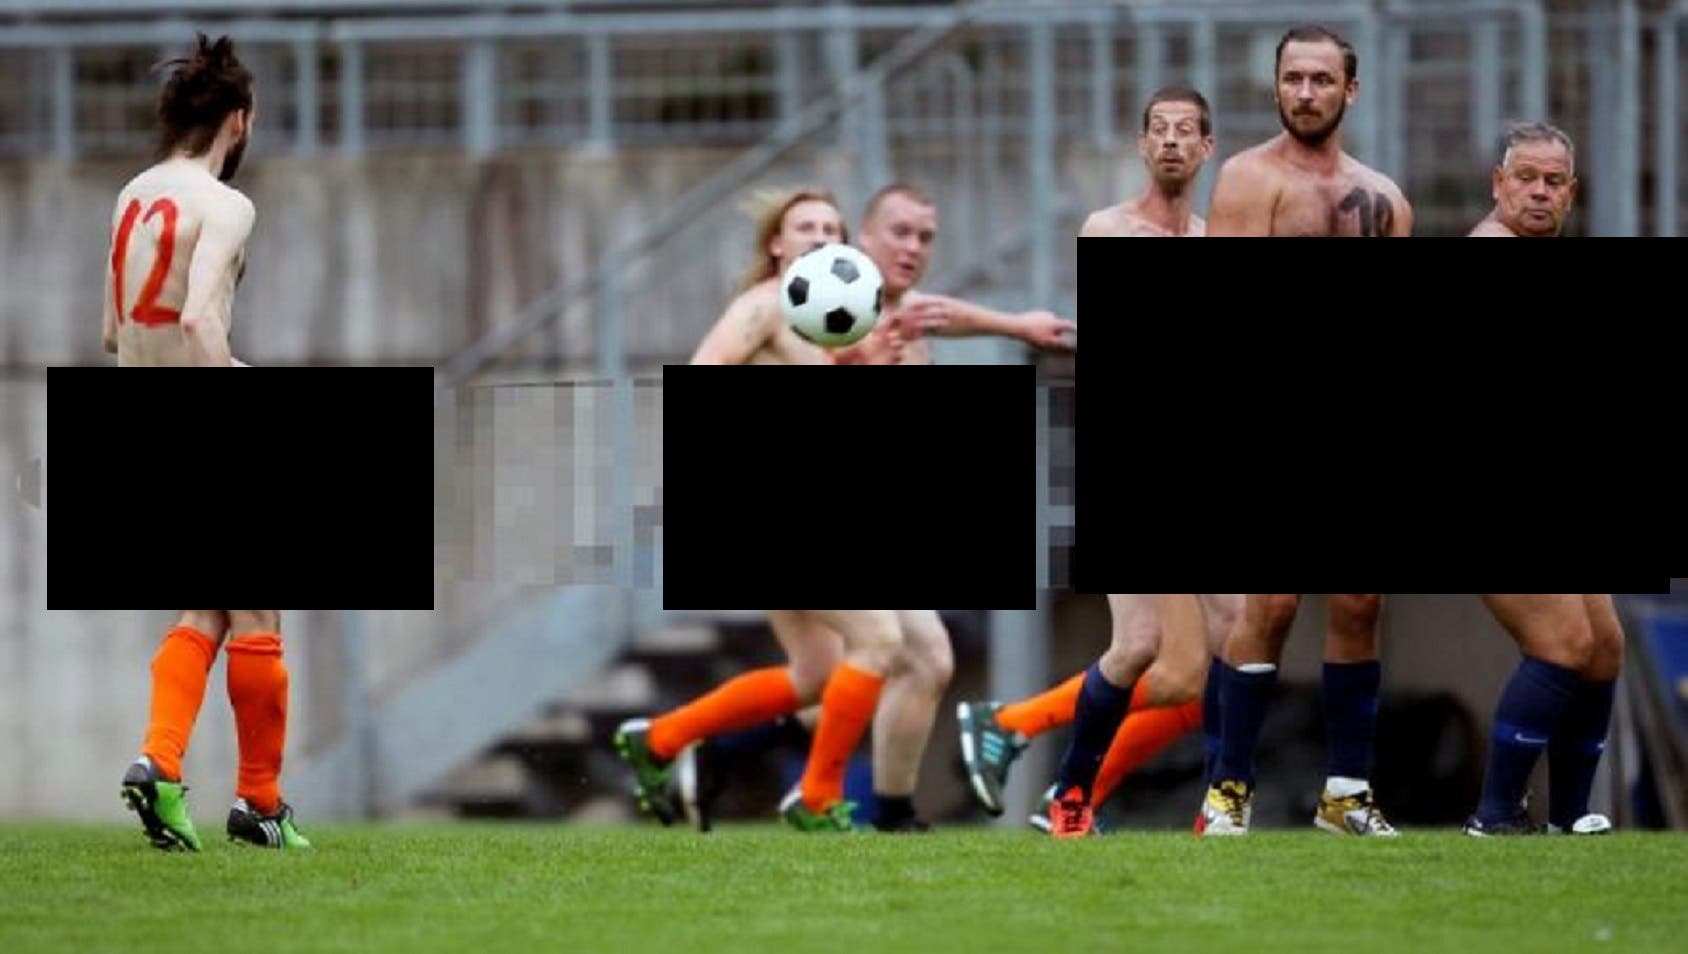 Entérate: Juegan desnudos un partido de futbol para protestar contra la FIFA